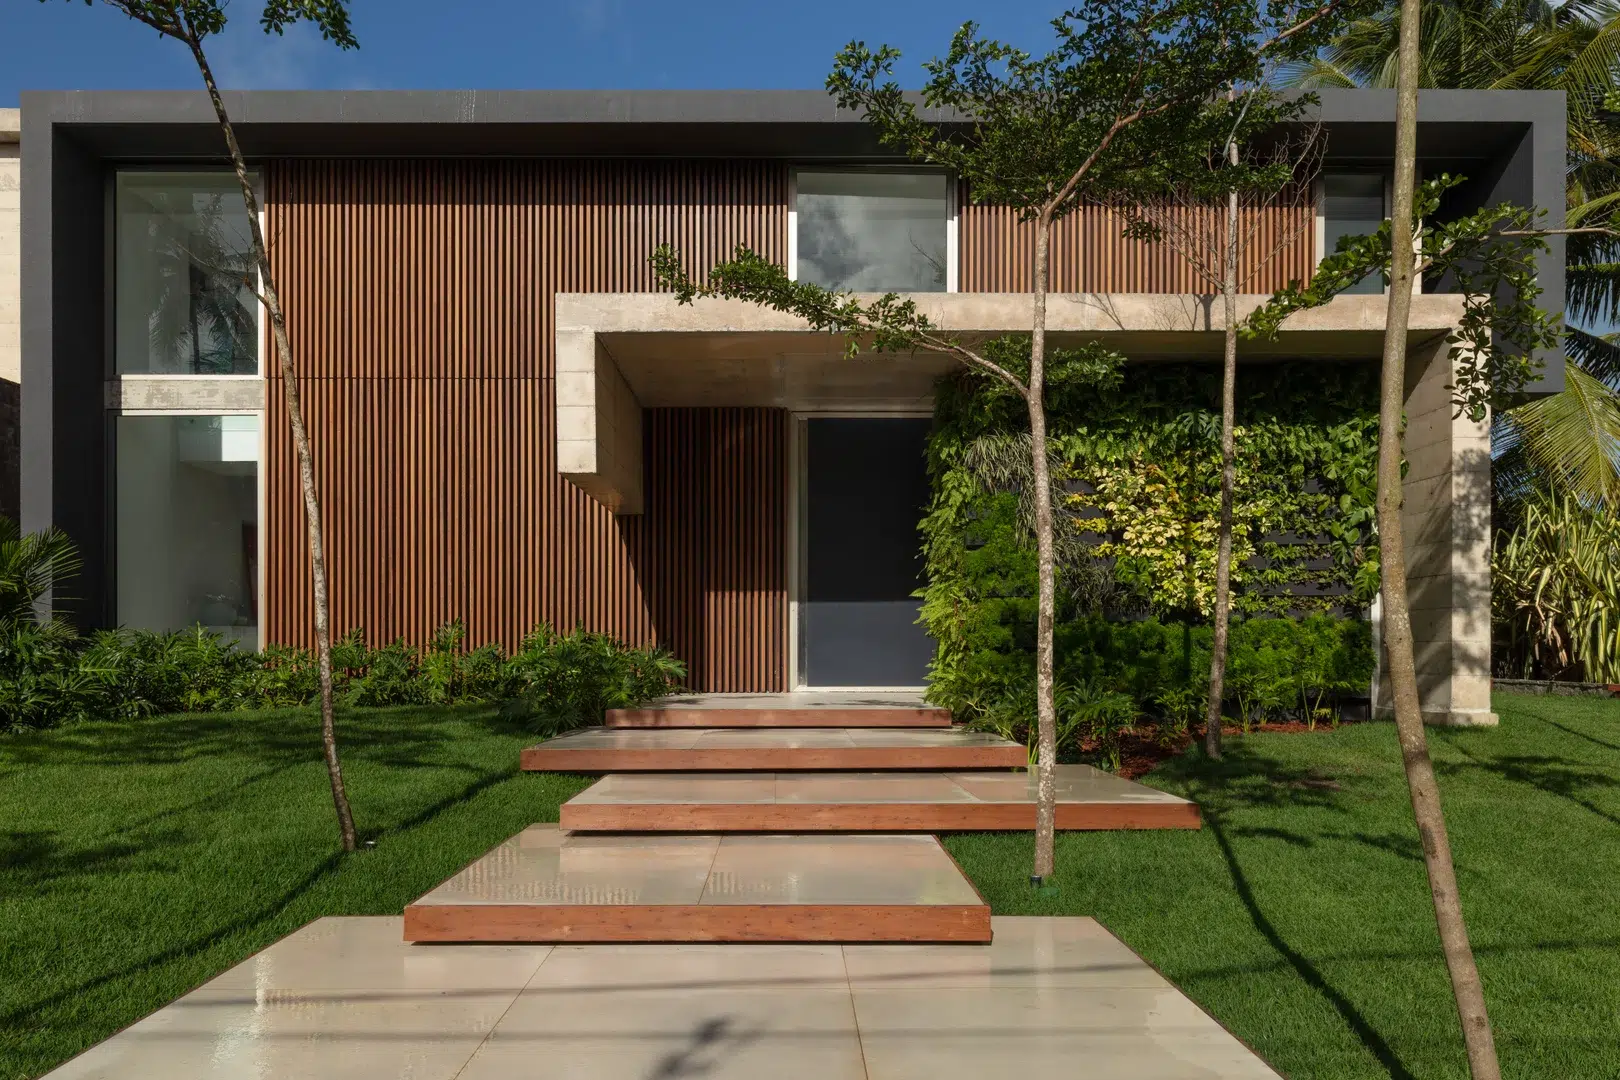 Fachadas contemporâneas integram a casa ao ambiente externo